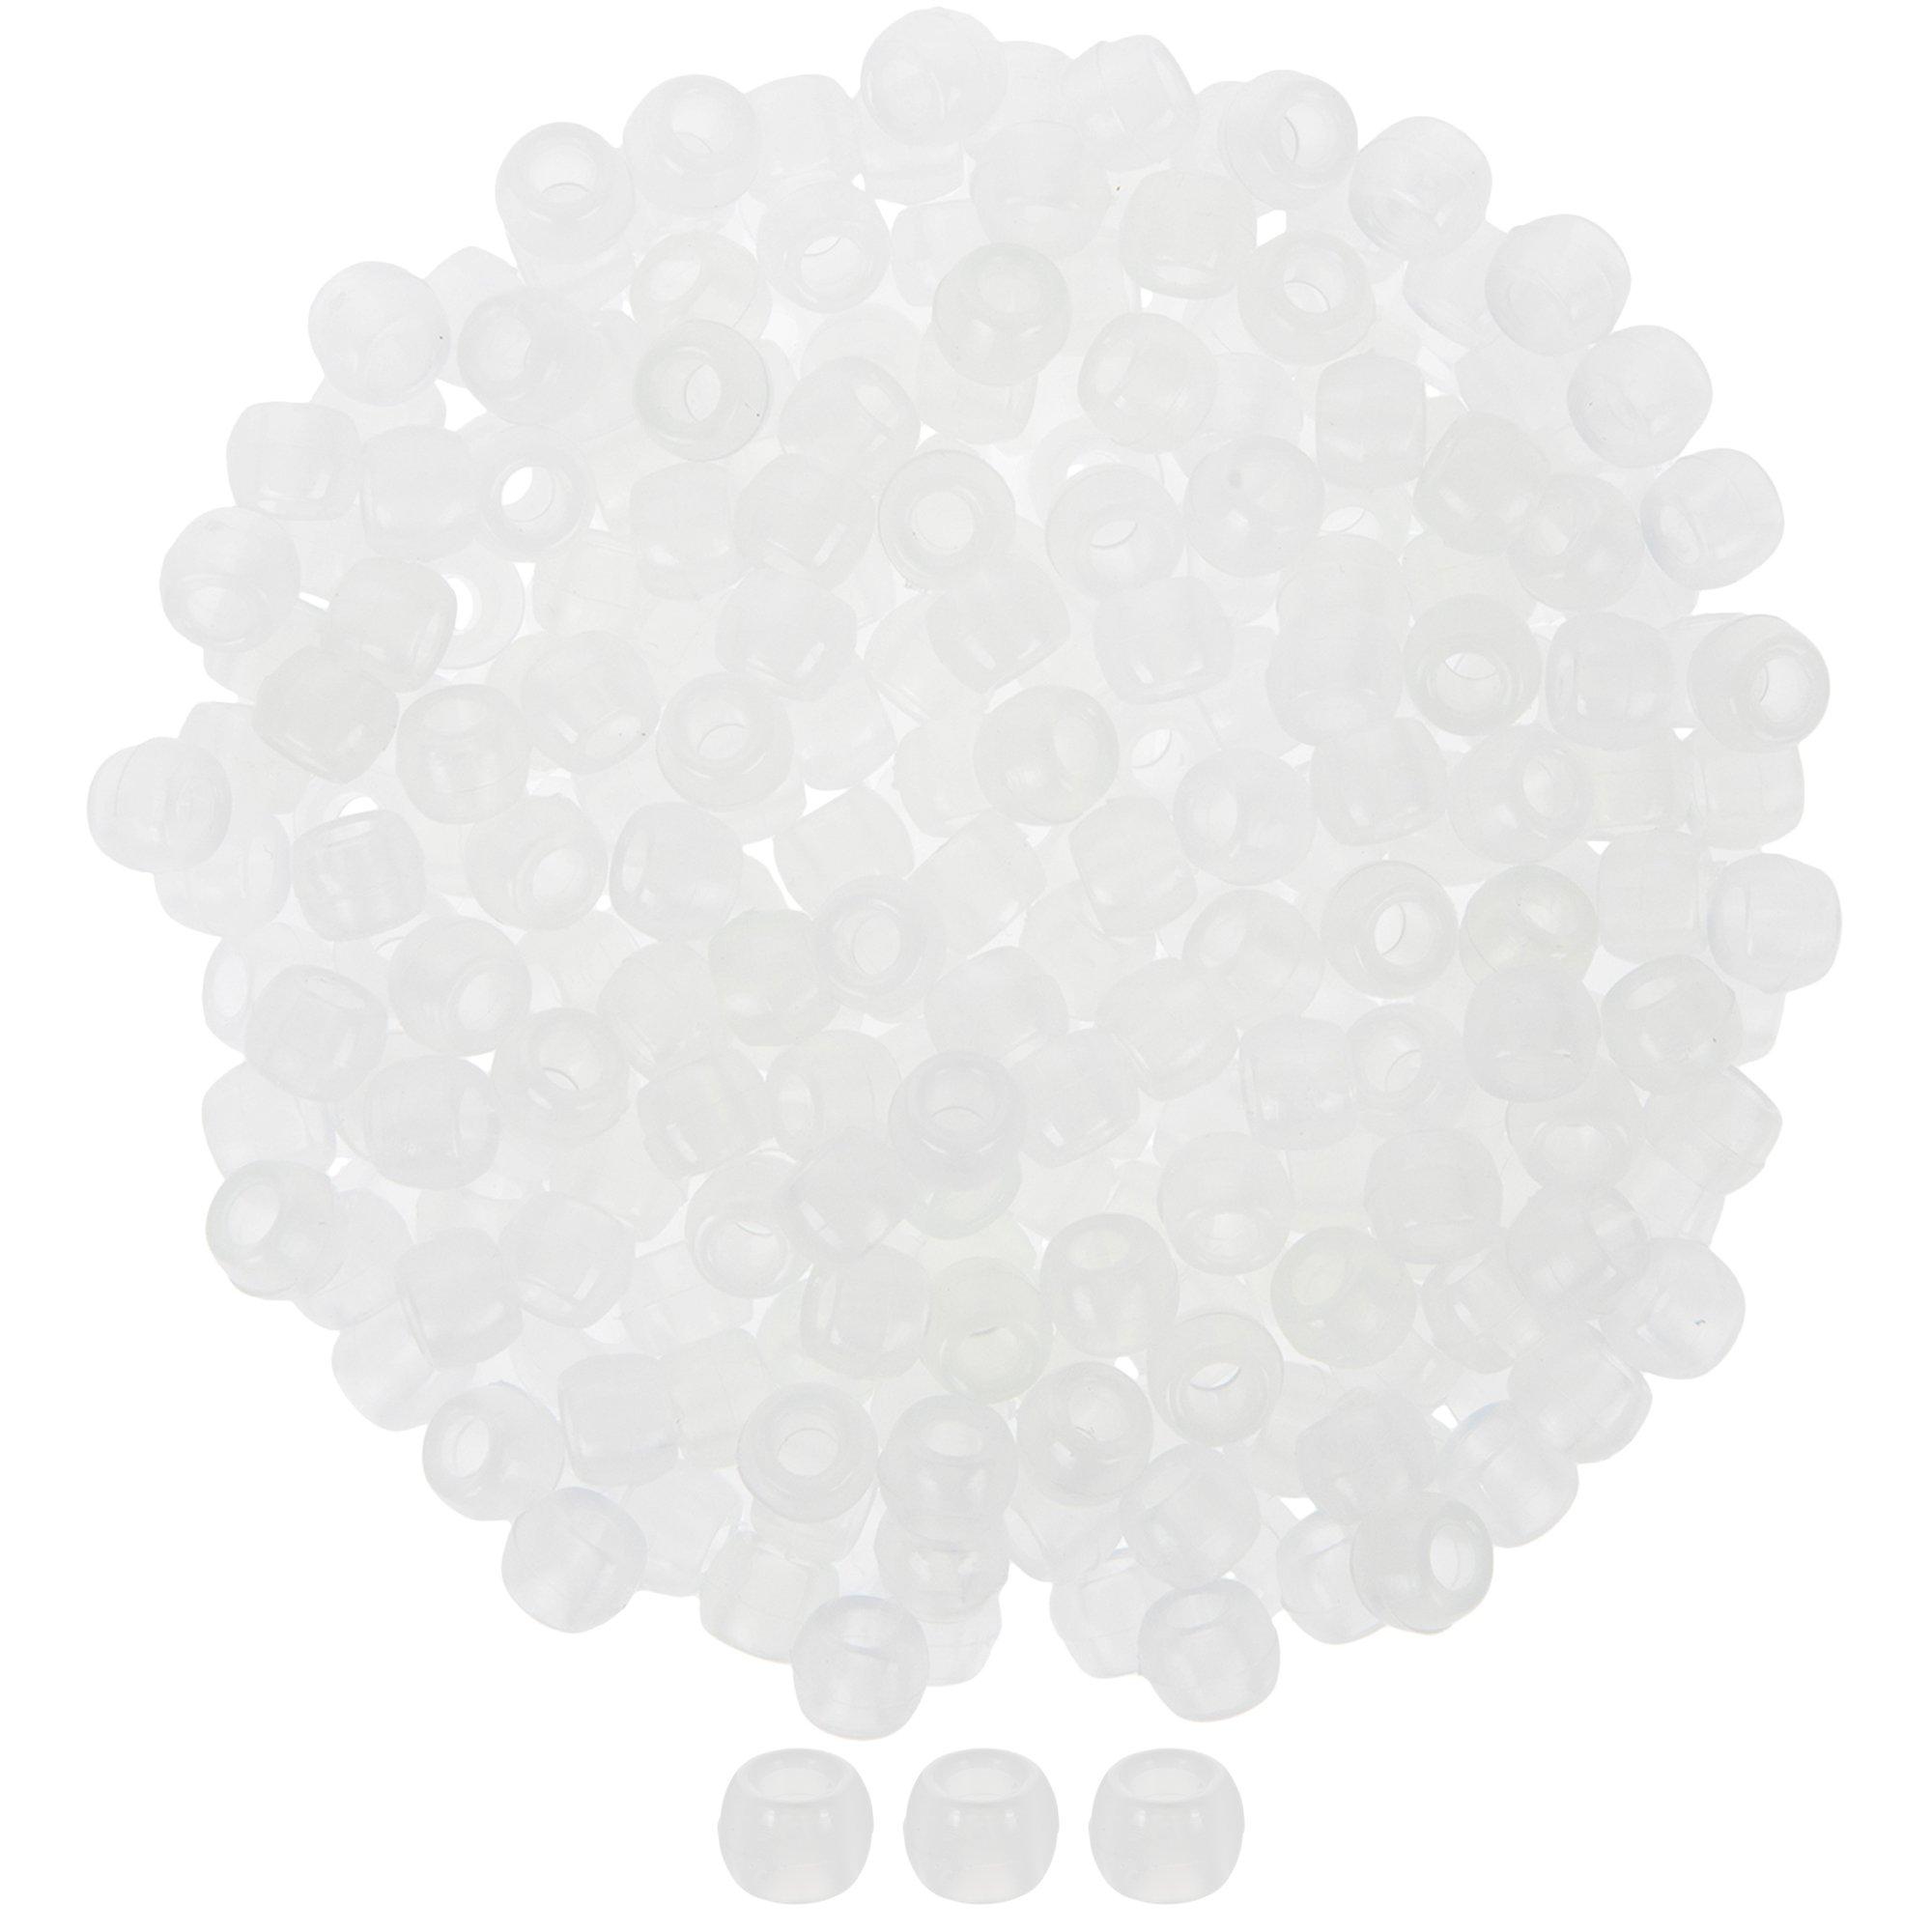 White & Black Plastic Number Beads, Hobby Lobby